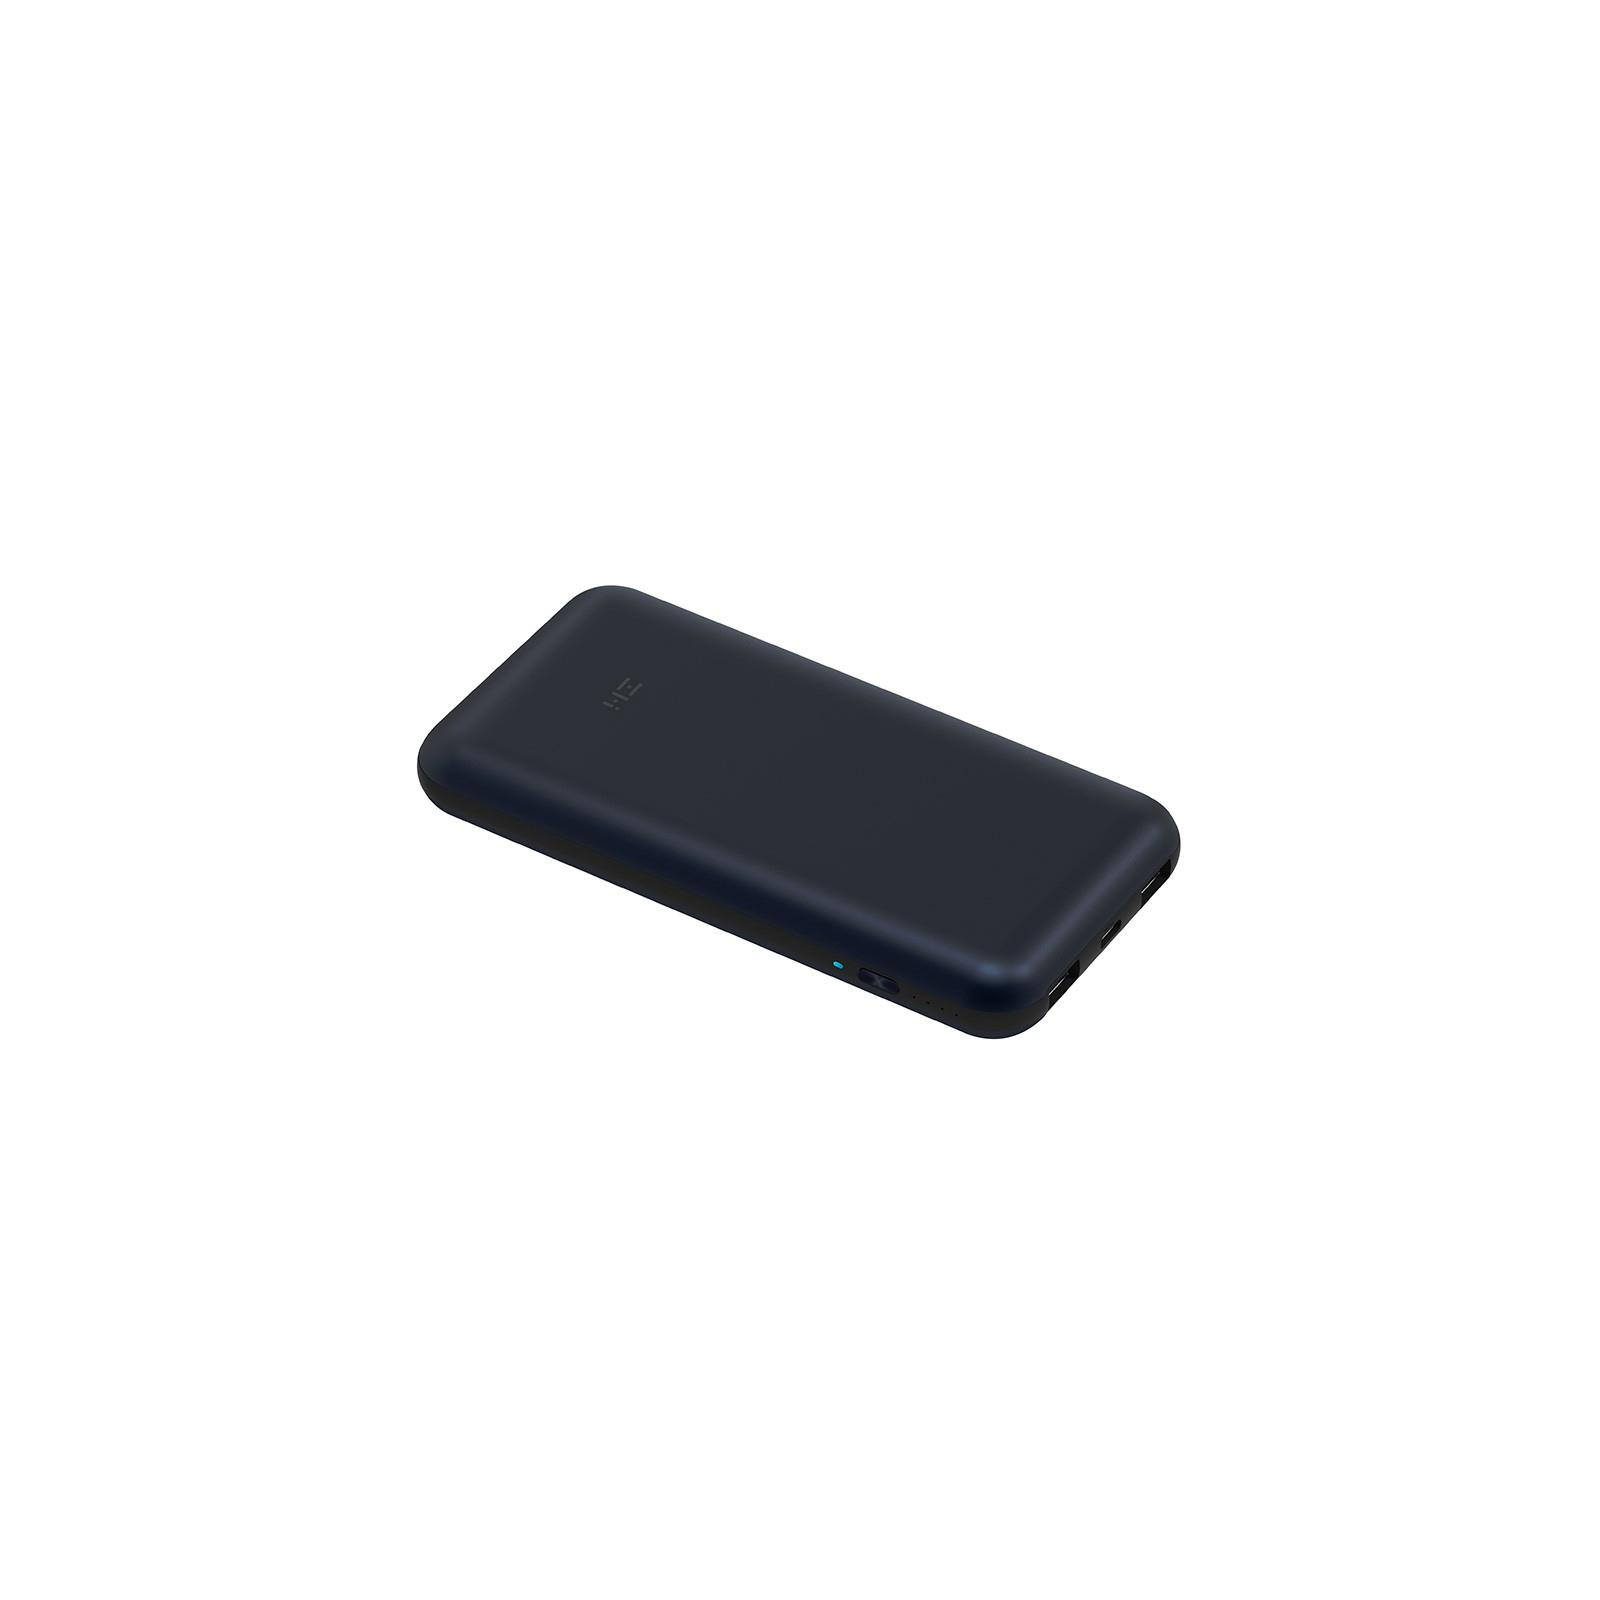 Батарея универсальная ZMI QB820 20000mAh Type-C 2*USB QC2.0/3.0 Black (QB820) изображение 4